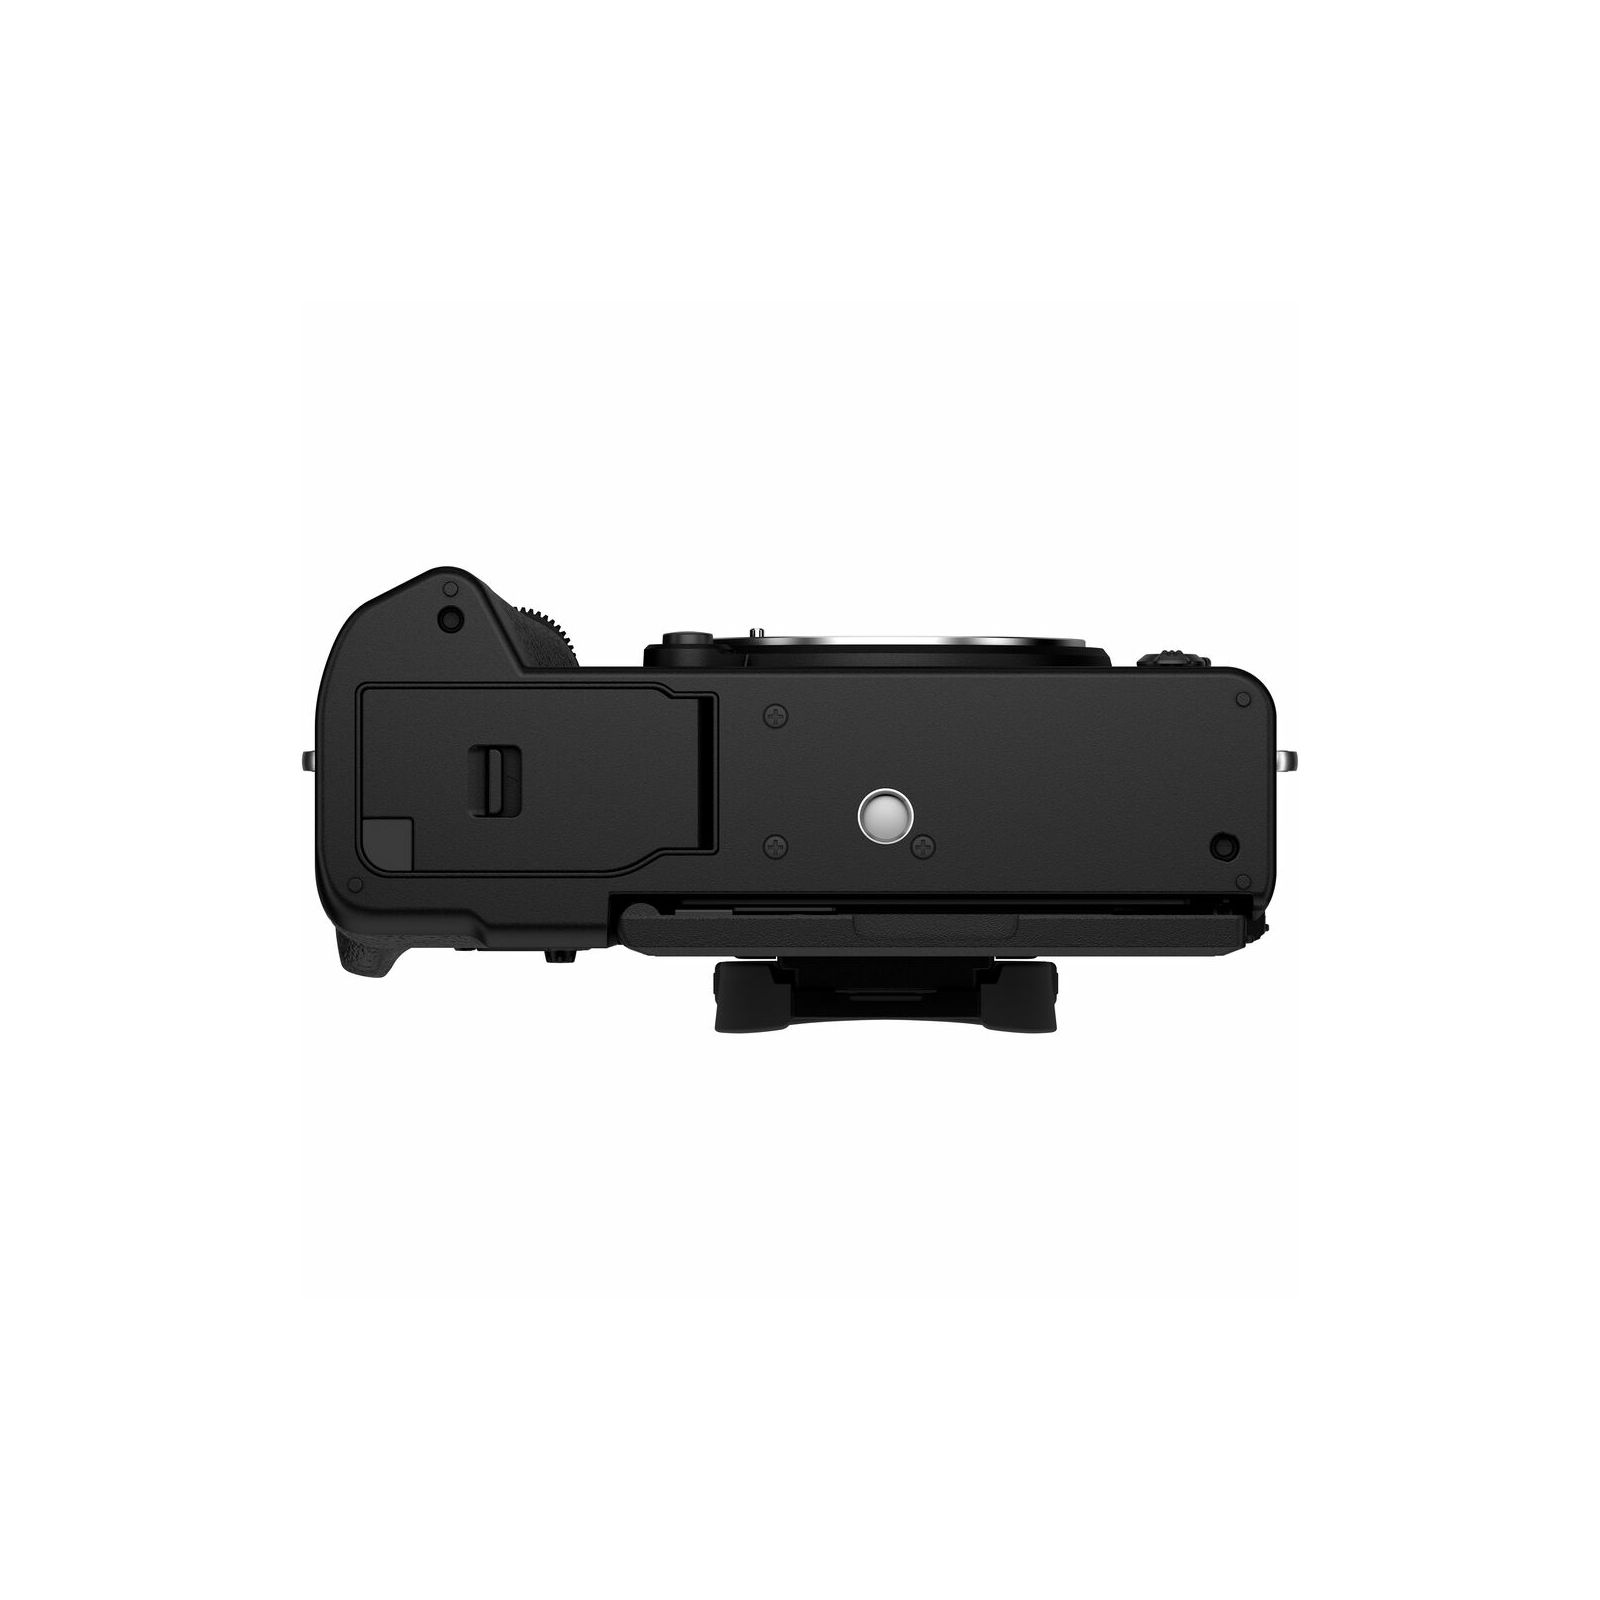 Fujifilm X-T5 + XF 16-80mm f/4 R LM OIS WR Black crni Fuji digitalni mirrorless fotoaparat s objektivom